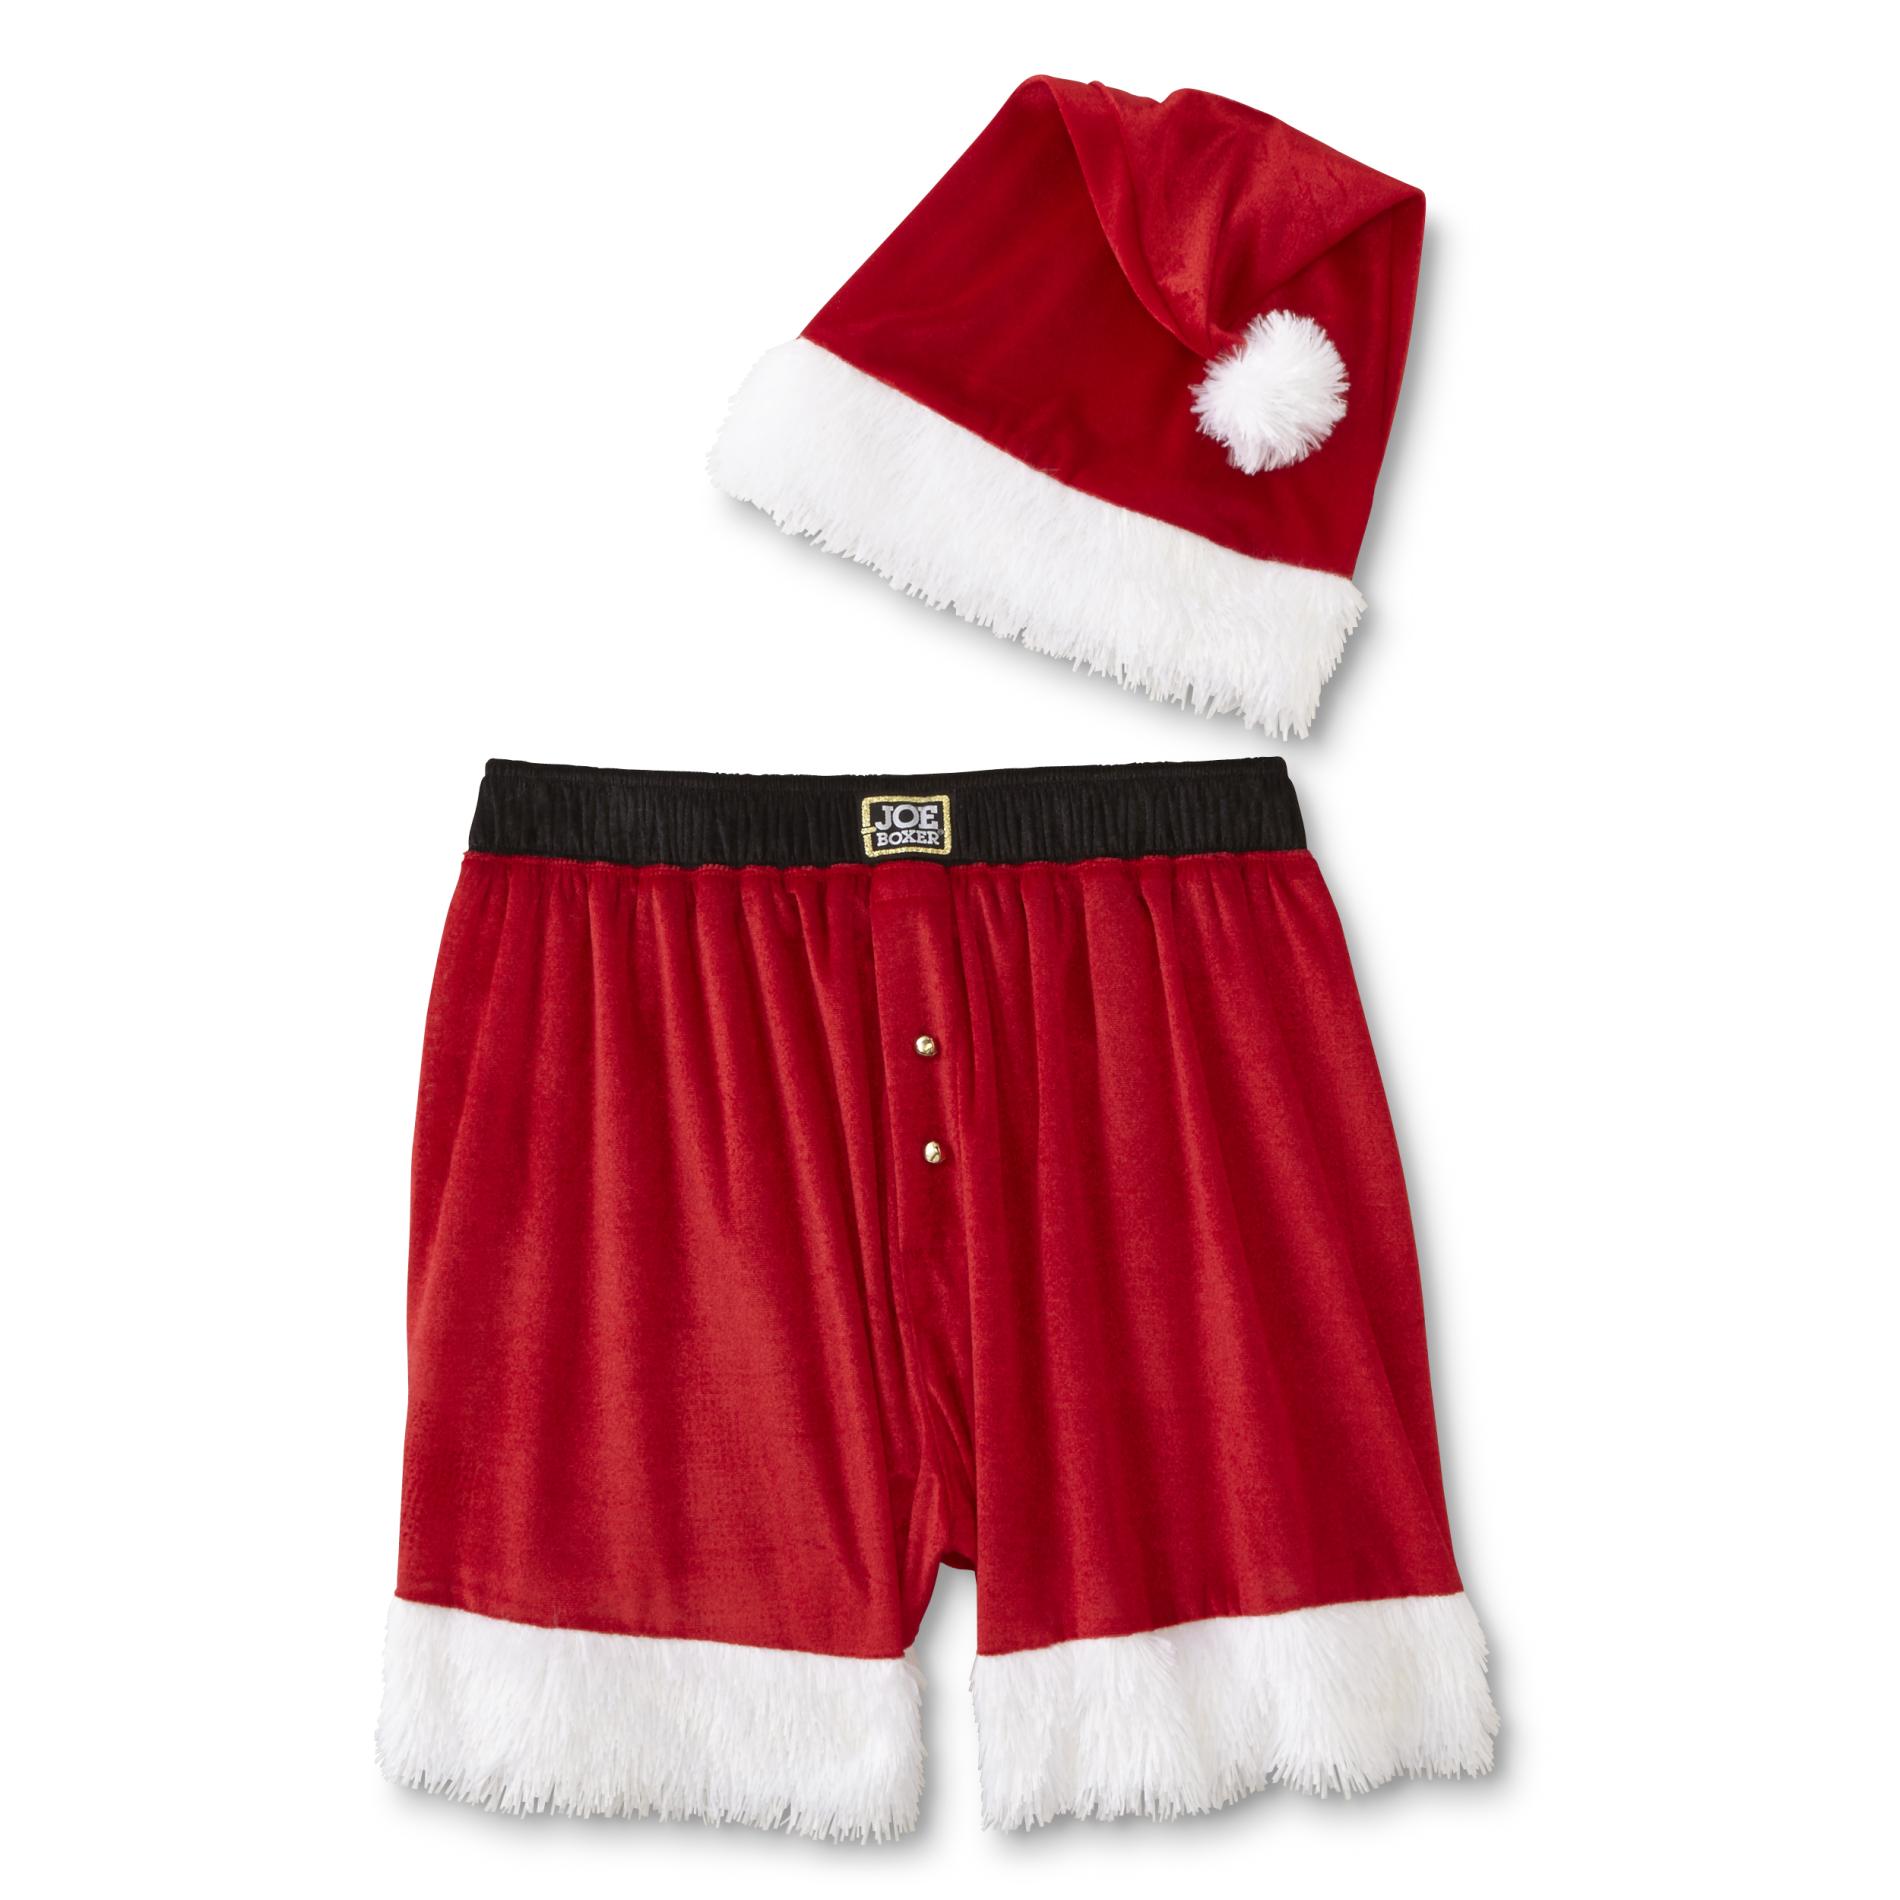 Joe Boxer Men's Christmas Pajama Shorts & Santa Hat | Shop Your Way ...